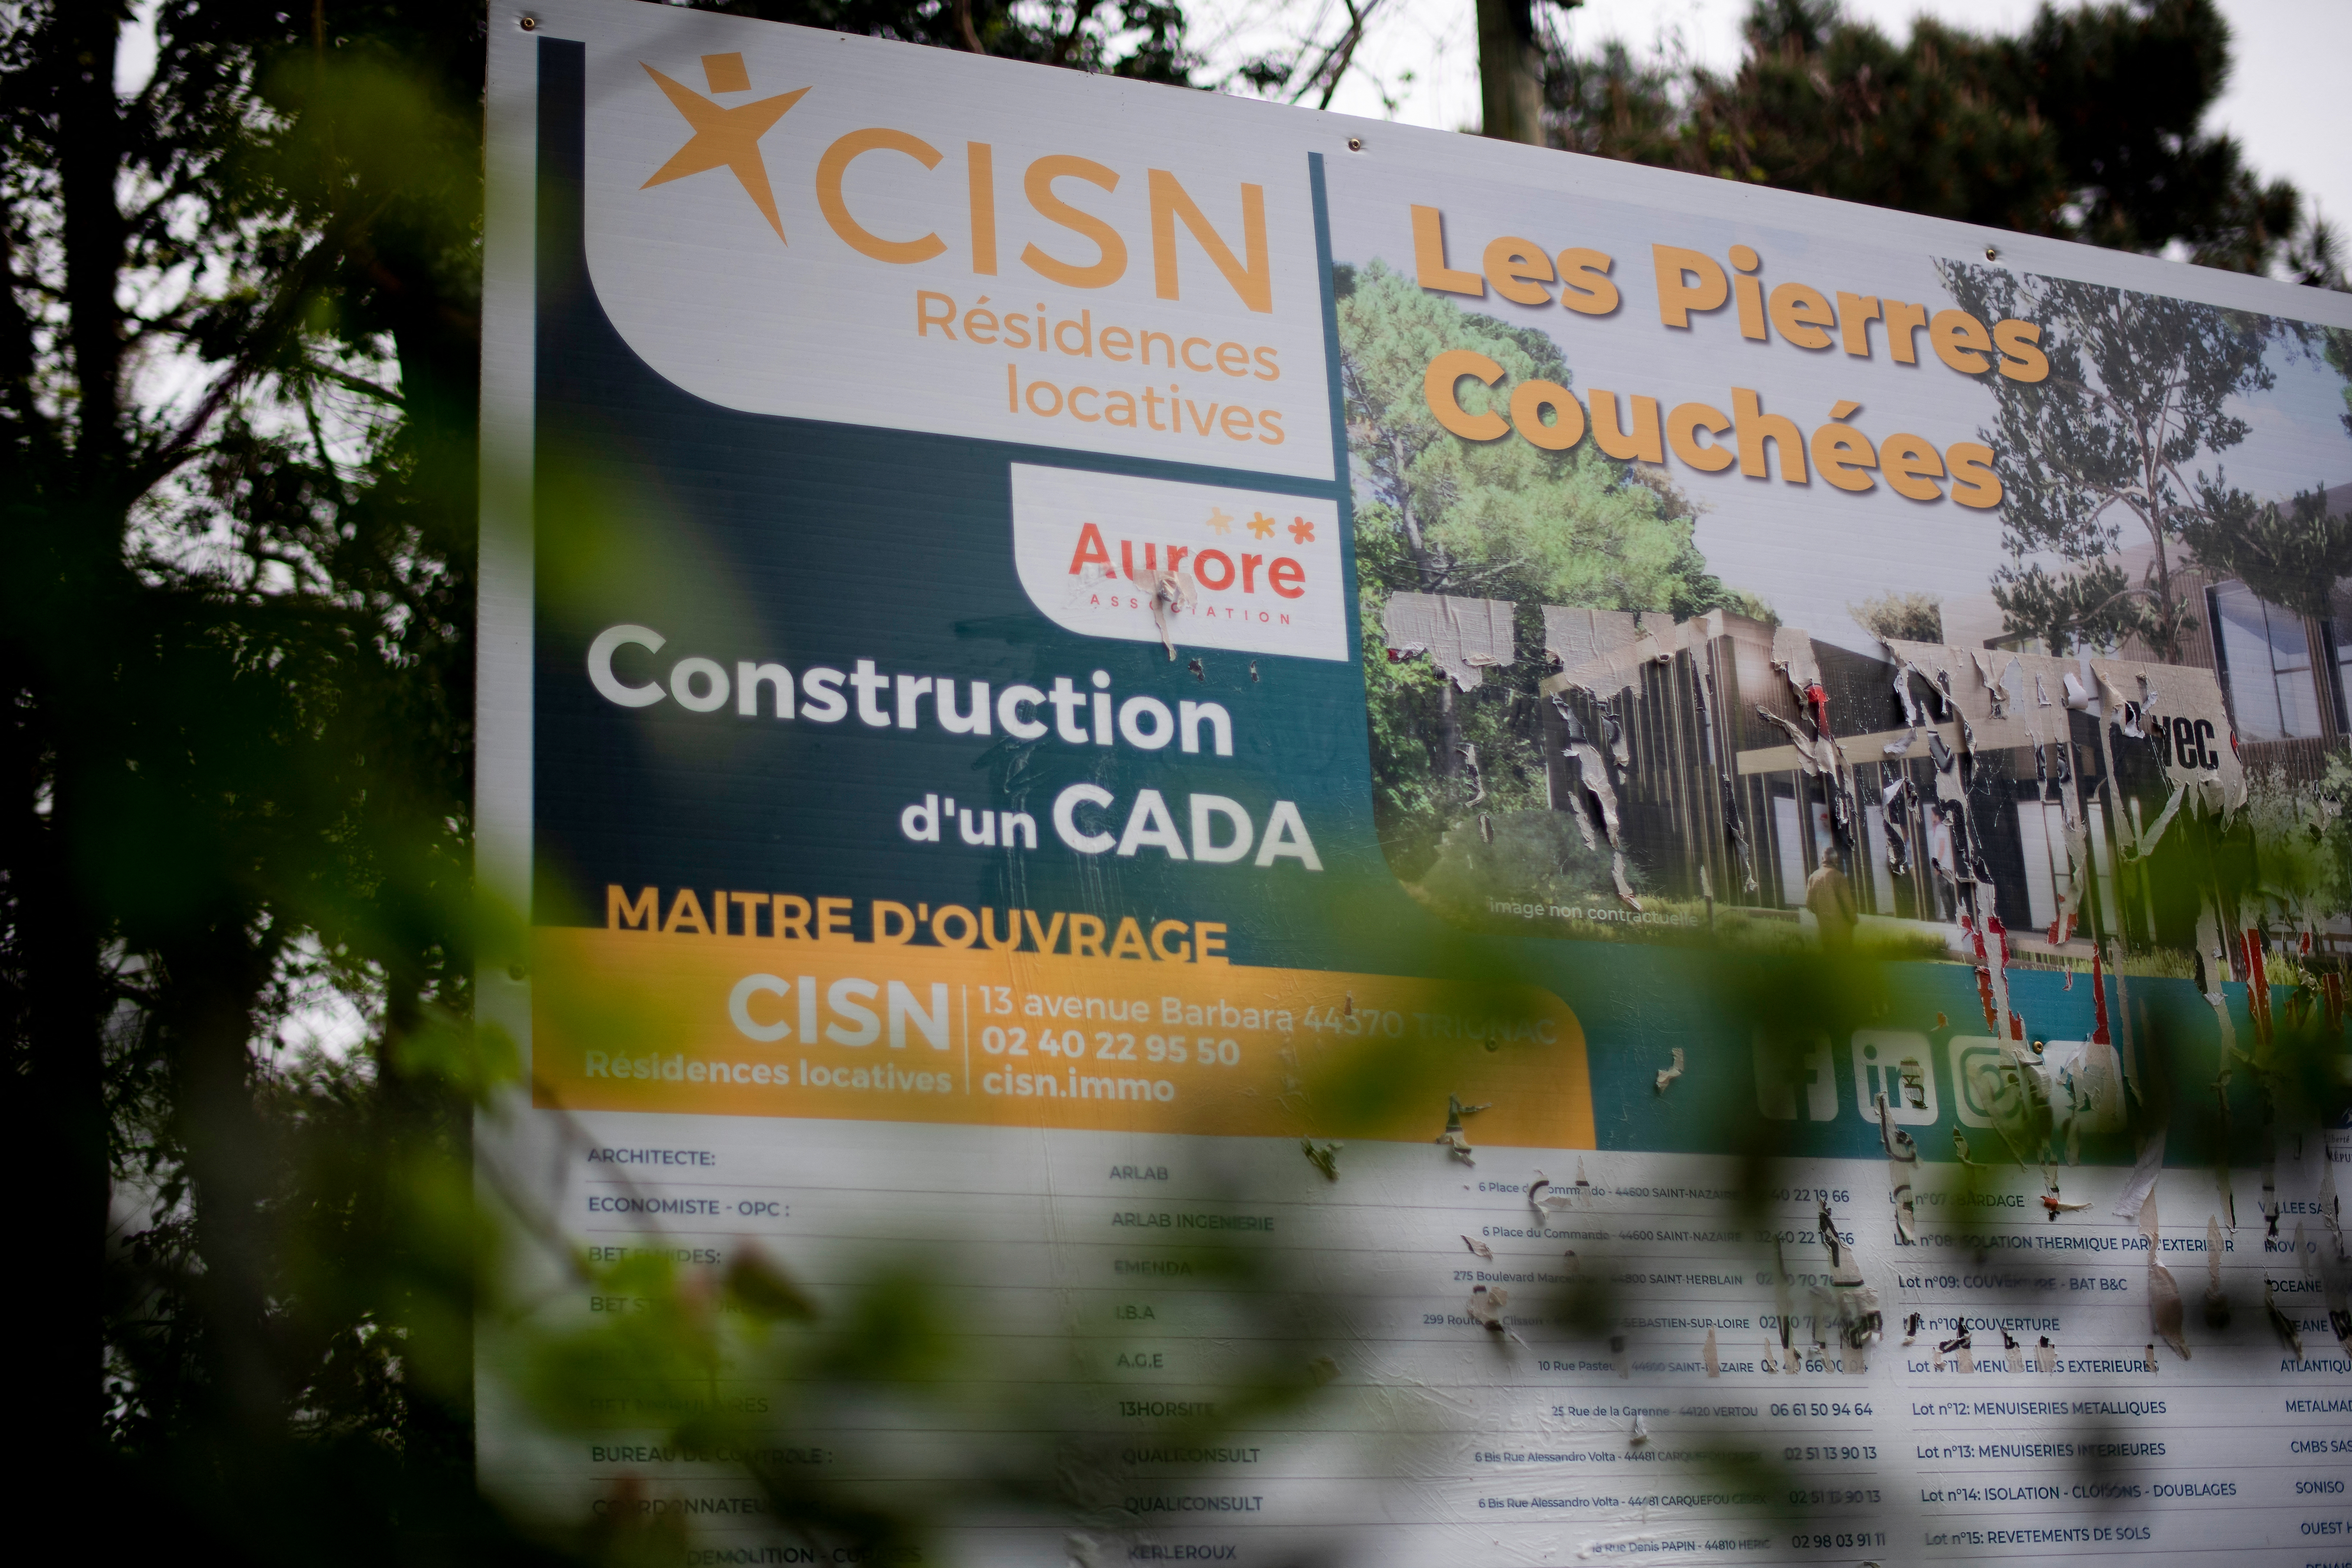 Le domicile de Yannick Morez a été incendié en mars, en lien avec le déménagement vivement contesté près d’une école maternelle d’un centre d’accueil pour demandeurs d’asile existant depuis 2016 dans cette commune de Loire-Atlantique. FRED TANNEAU / AFP